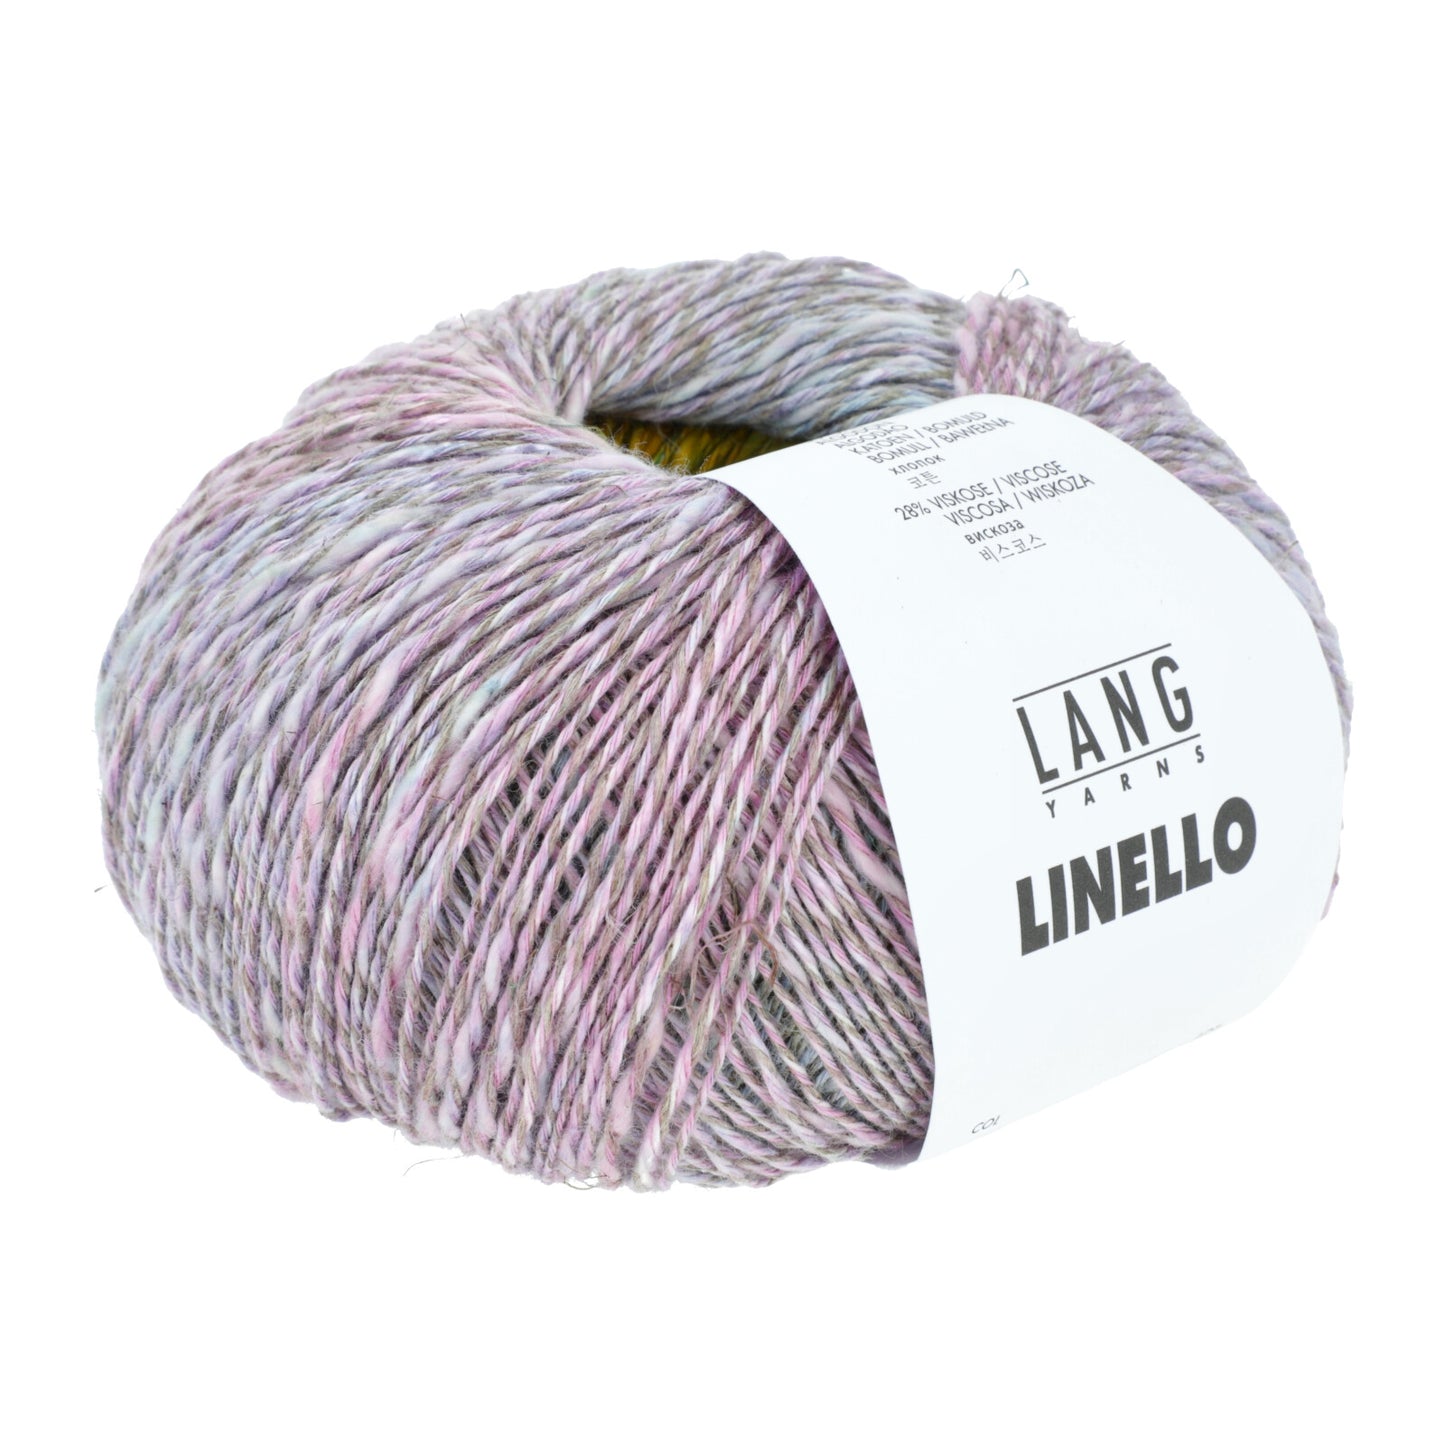 Linello | Lang Yarns